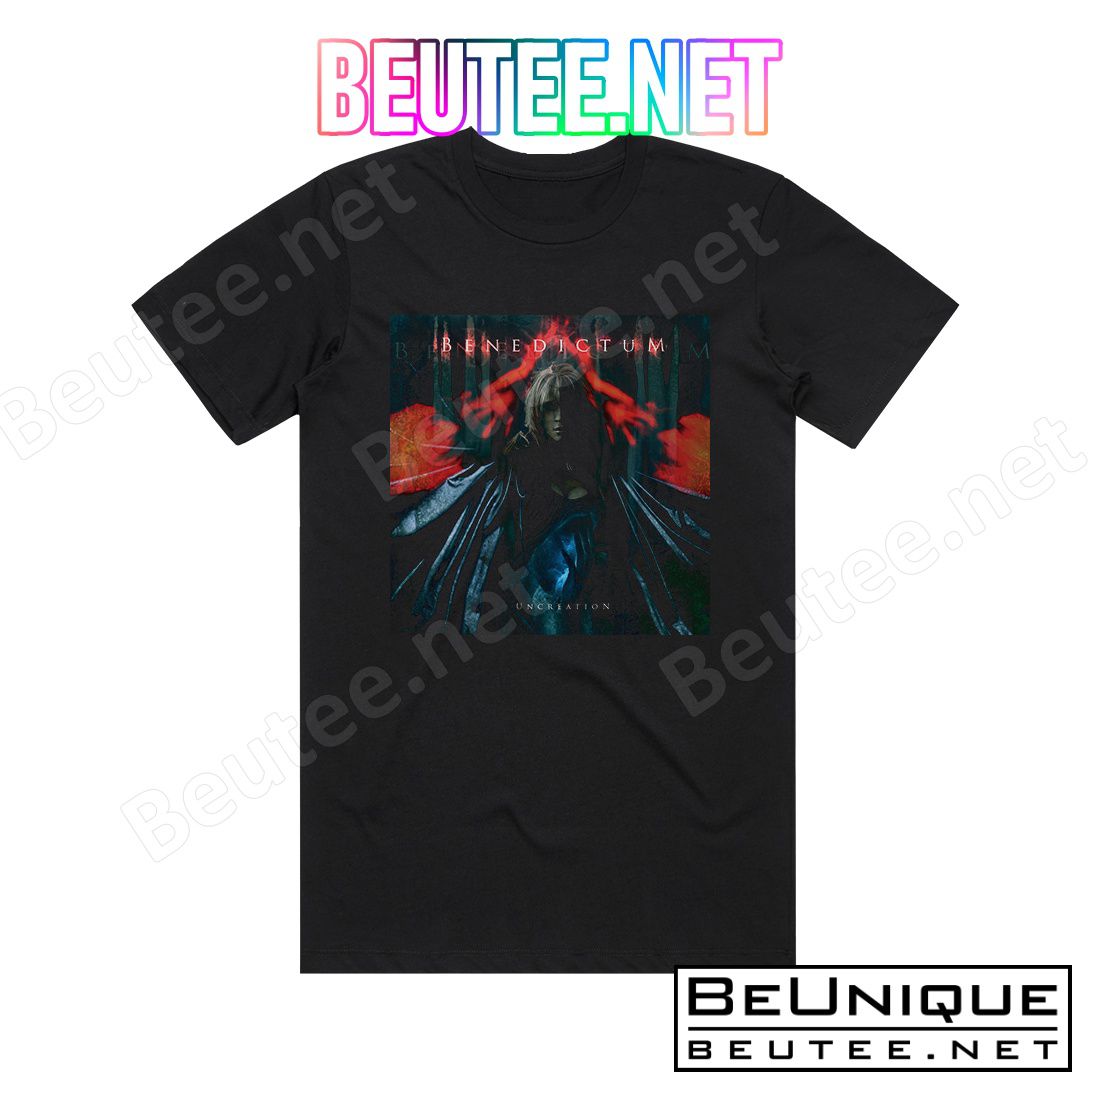 Benedictum Uncreation Album Cover T-Shirt